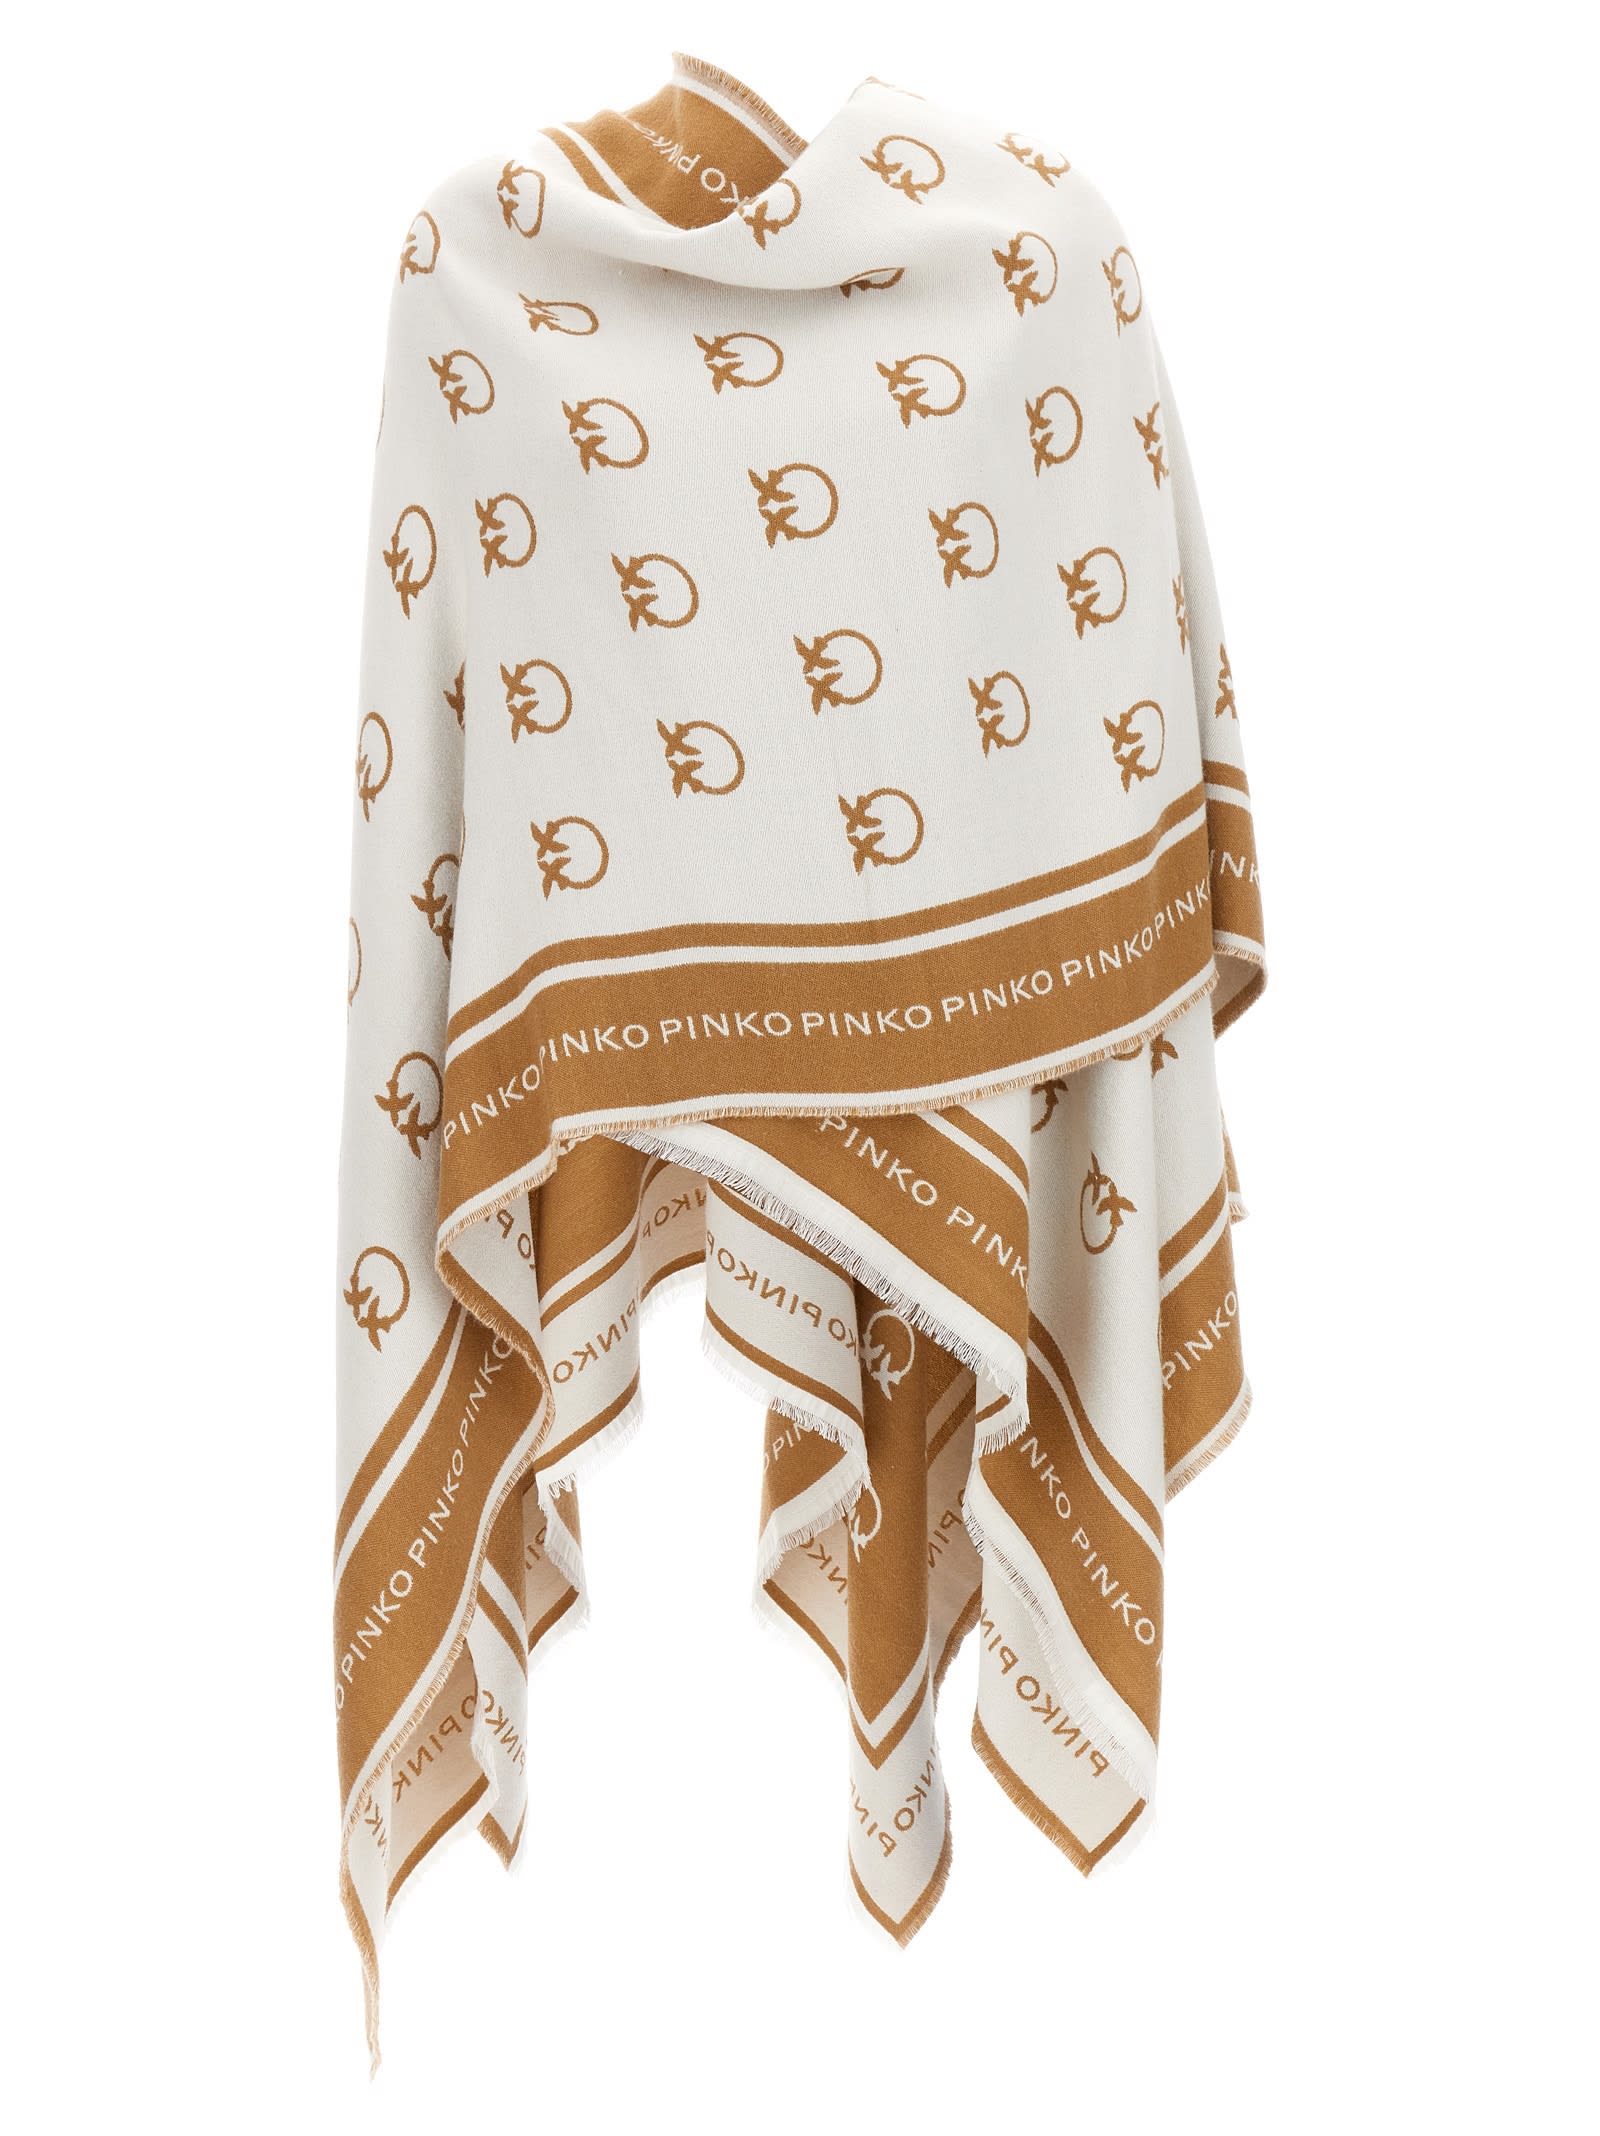 Matrice monogram-pattern scarf, PINKO